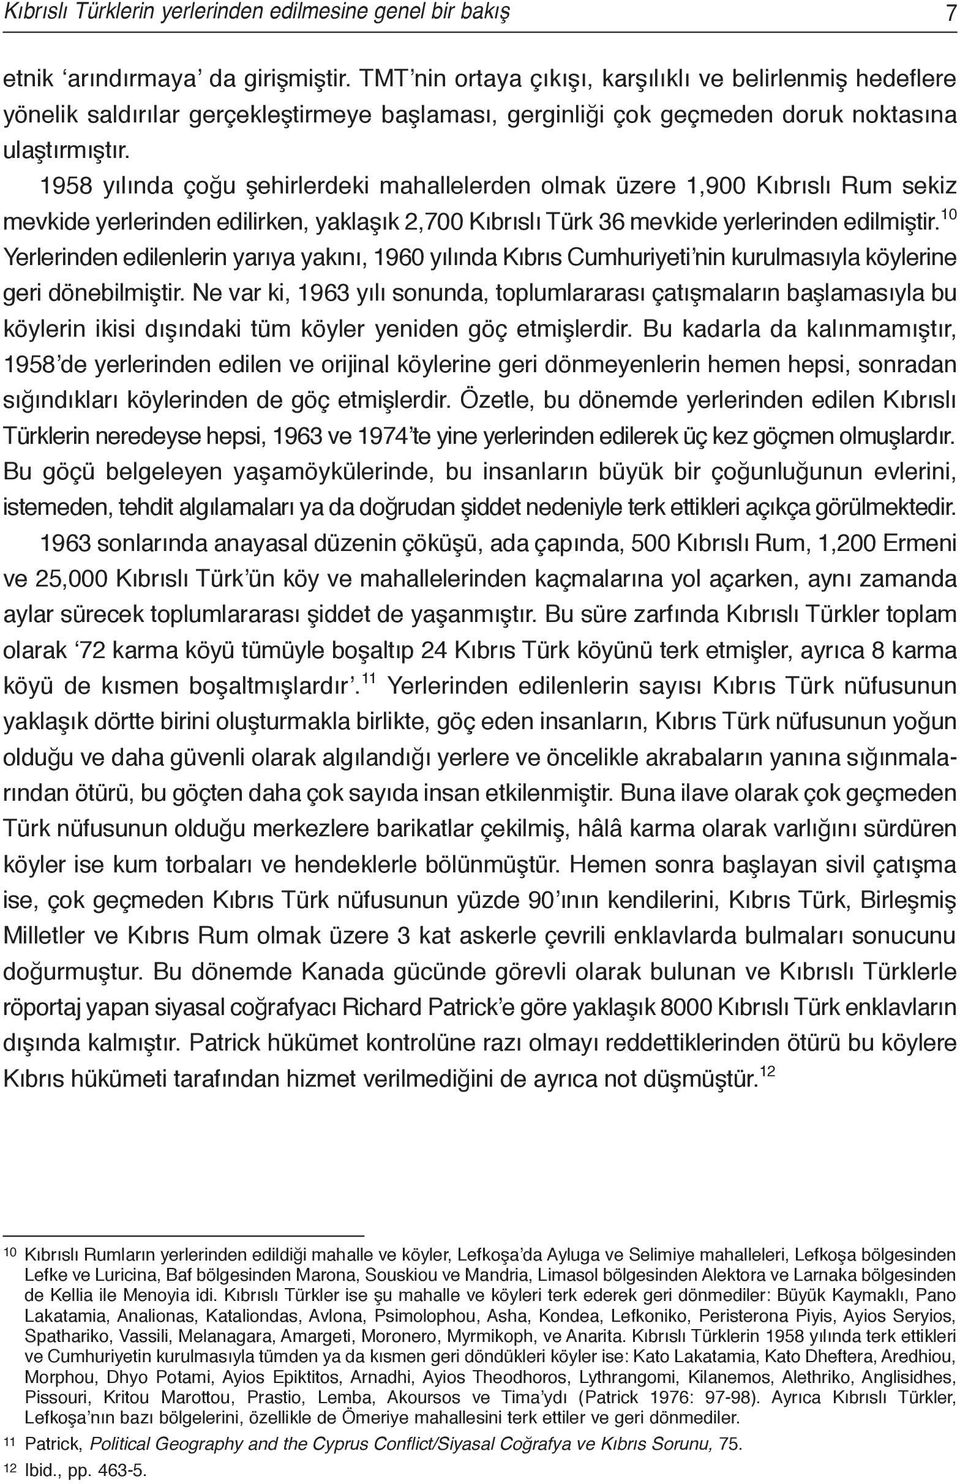 1958 yılında çoğu şehirlerdeki mahallelerden olmak üzere 1,900 Kıbrıslı Rum sekiz mevkide yerlerinden edilirken, yaklaşık 2,700 Kıbrıslı Türk 36 mevkide yerlerinden edilmiştir.